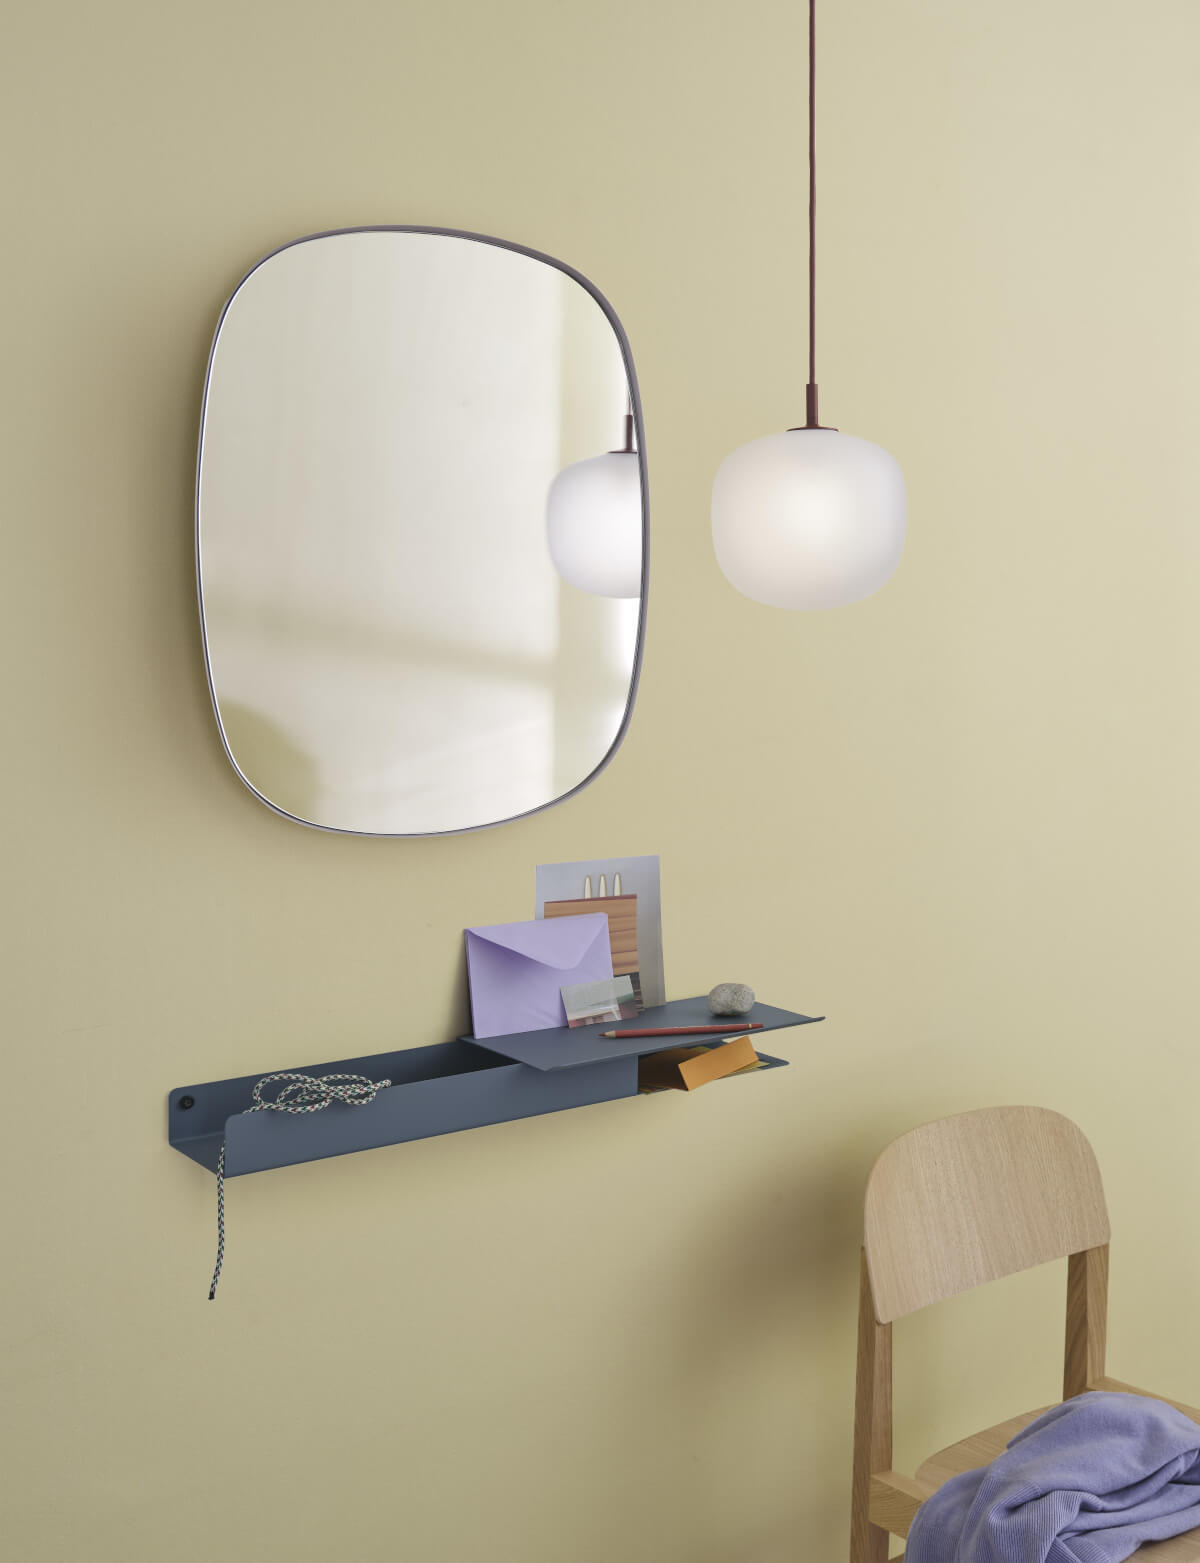 Framed Spiegel, small, dunkelgrün / glasklar